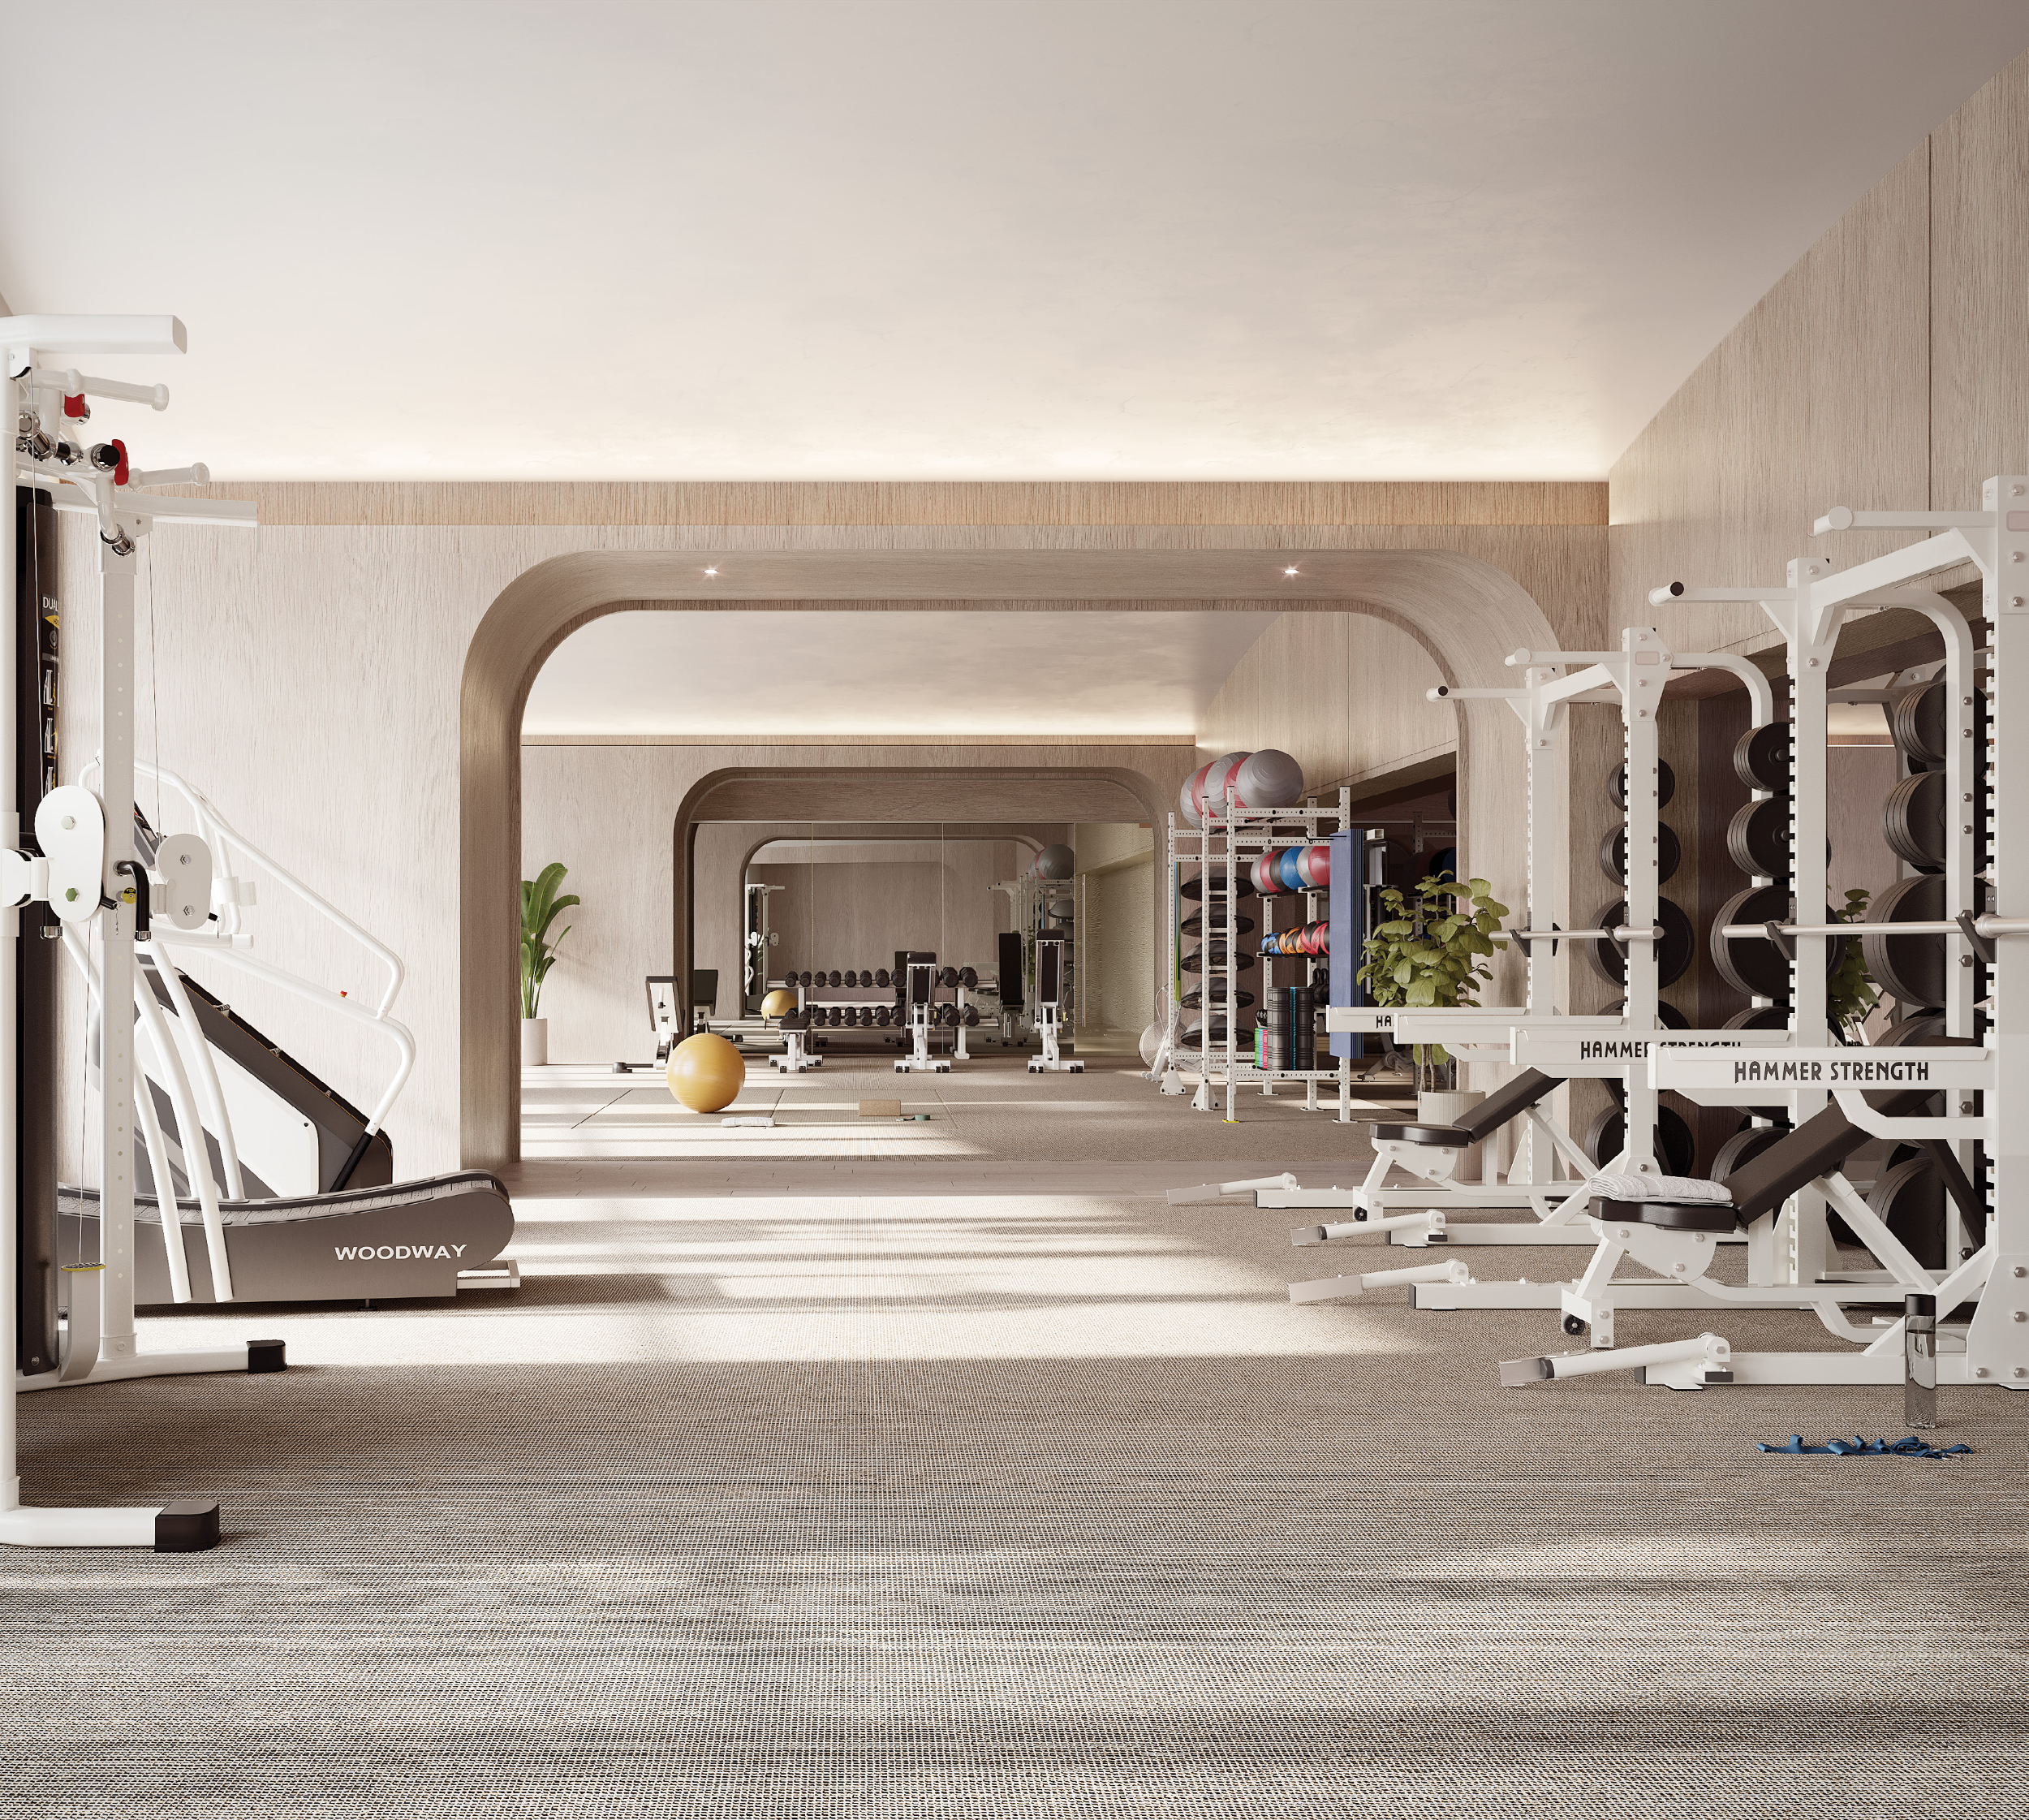 St Regis Brickell Fitness Room